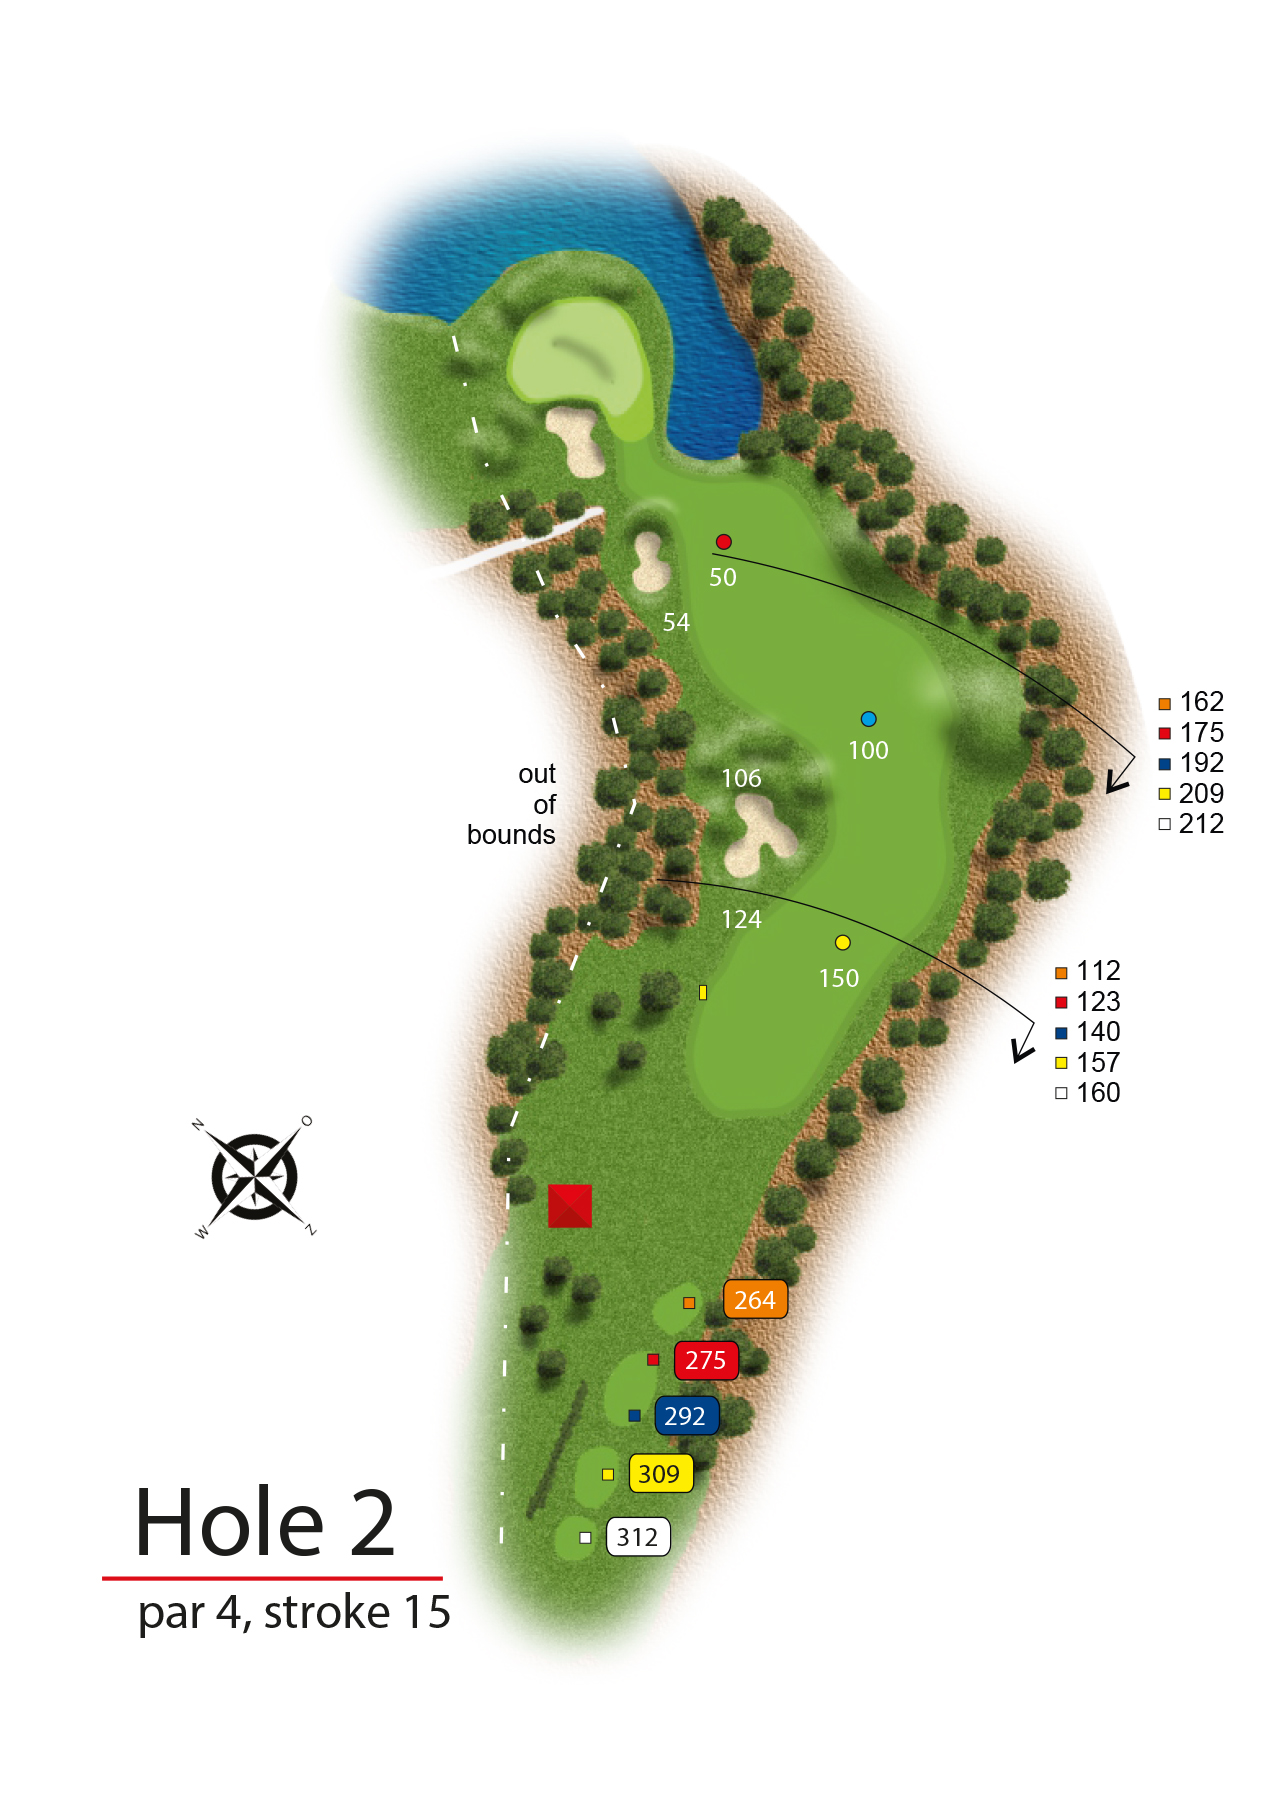 Hole 2 - simple